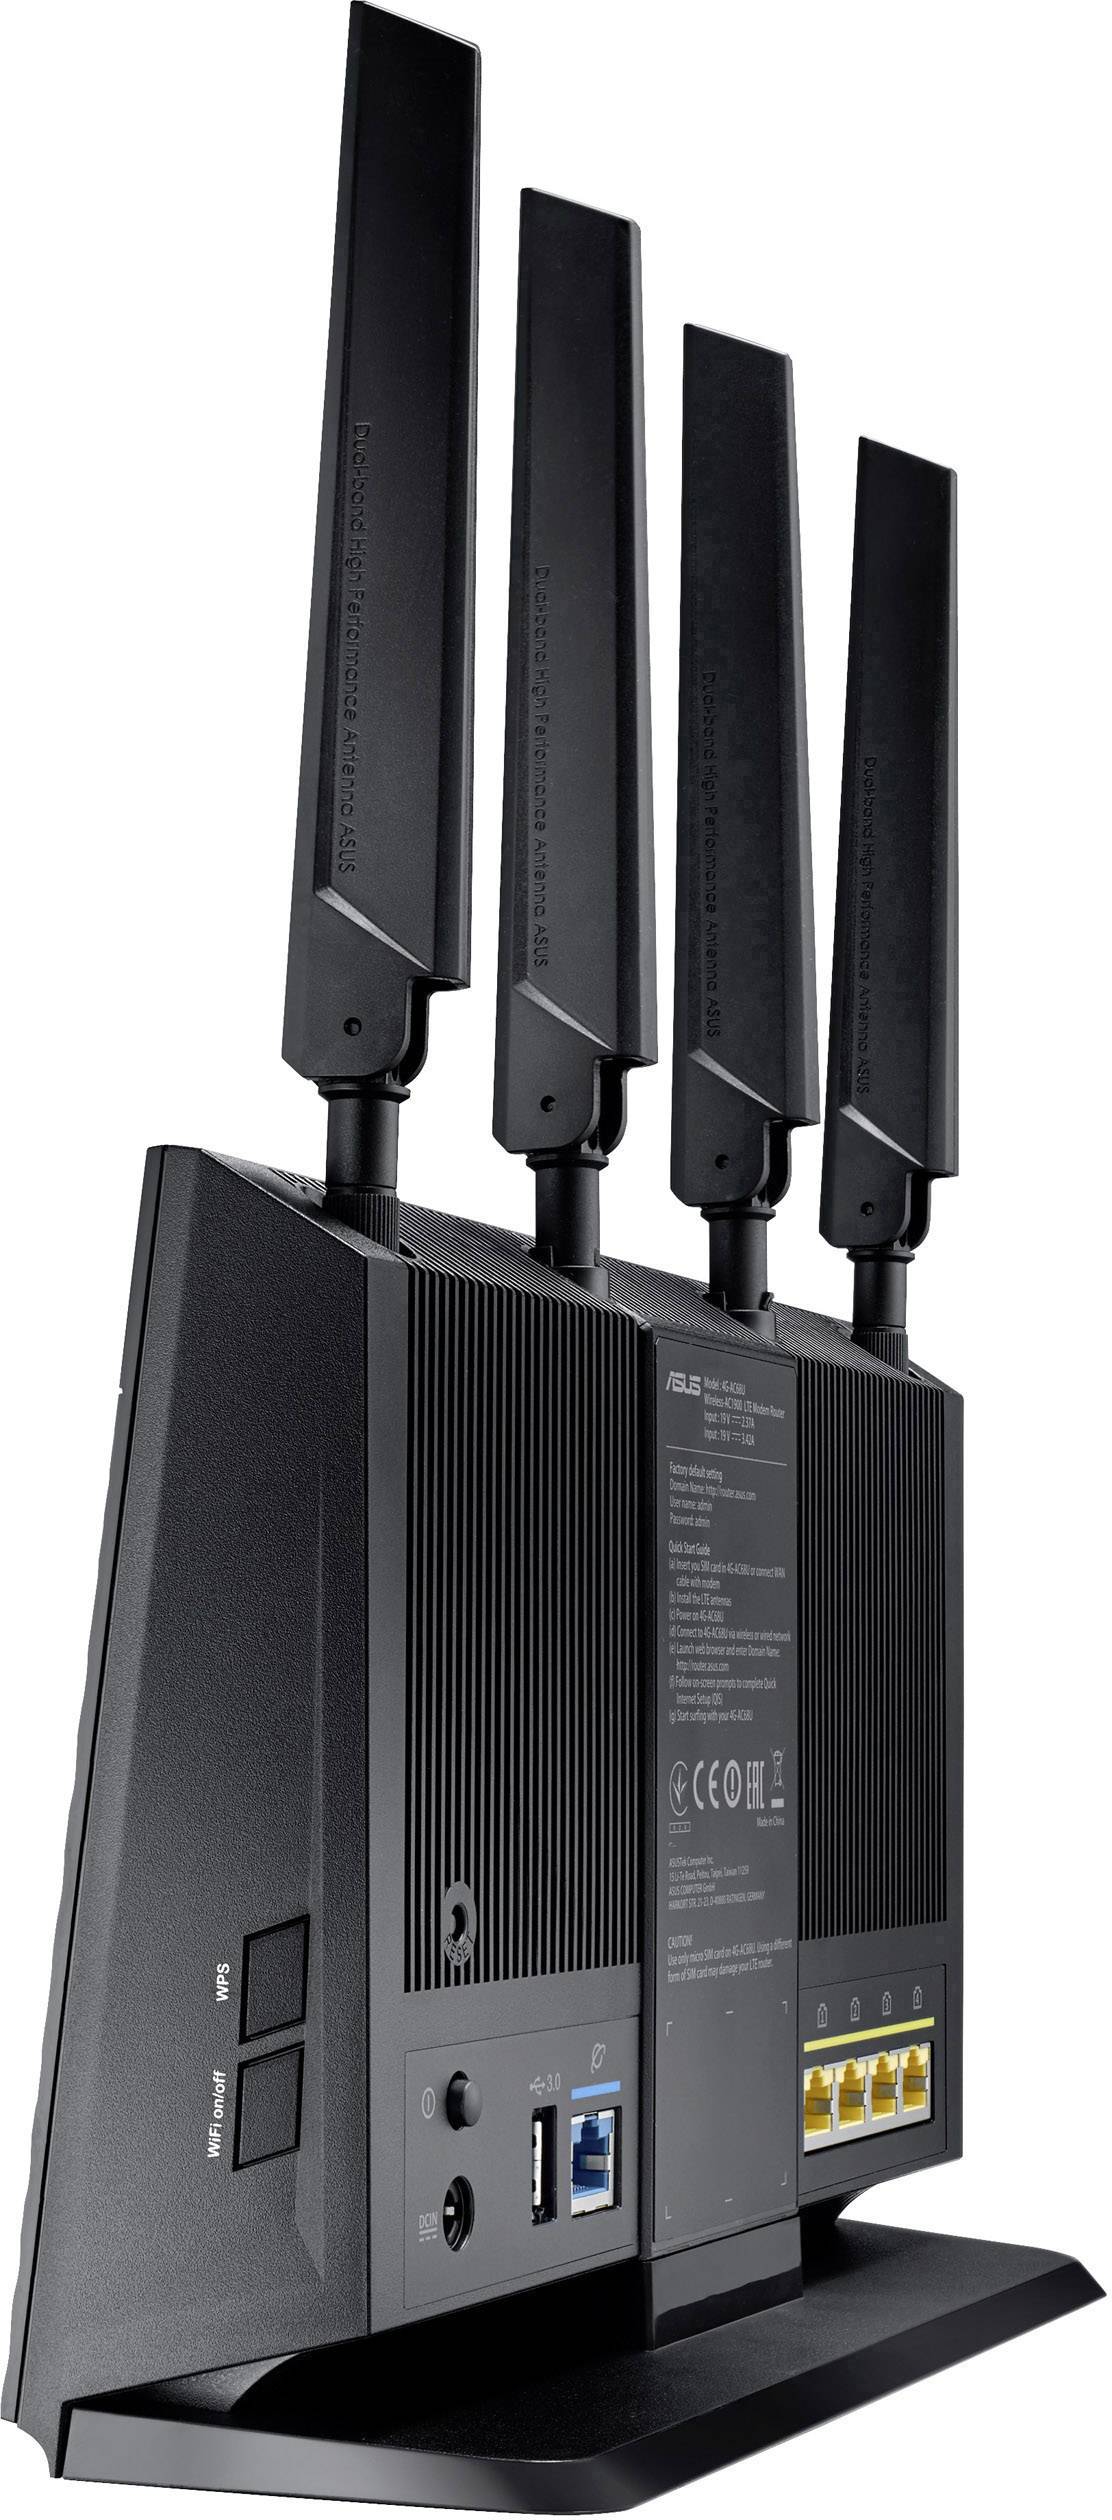 Asus 4G-AC68U AC1900 Wi-Fi modem router Built-in LTE, UMTS GHz, 5 GHz | Conrad.com